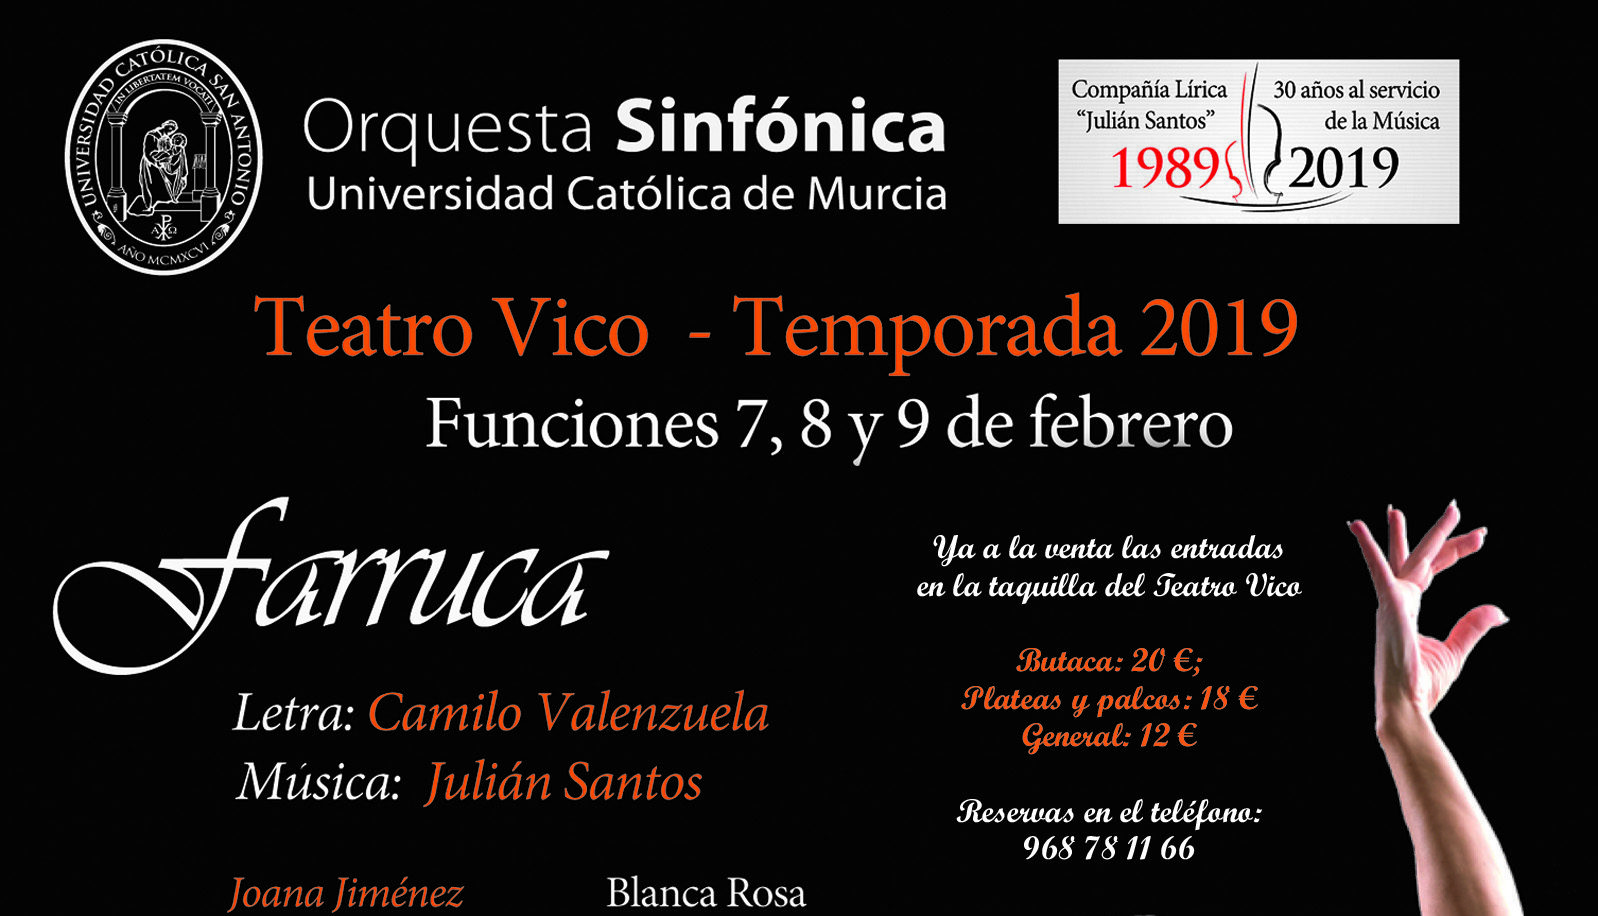 El Teatro Vico reestrena hoy «Farruca» del gran maestro compositor Julián Santos